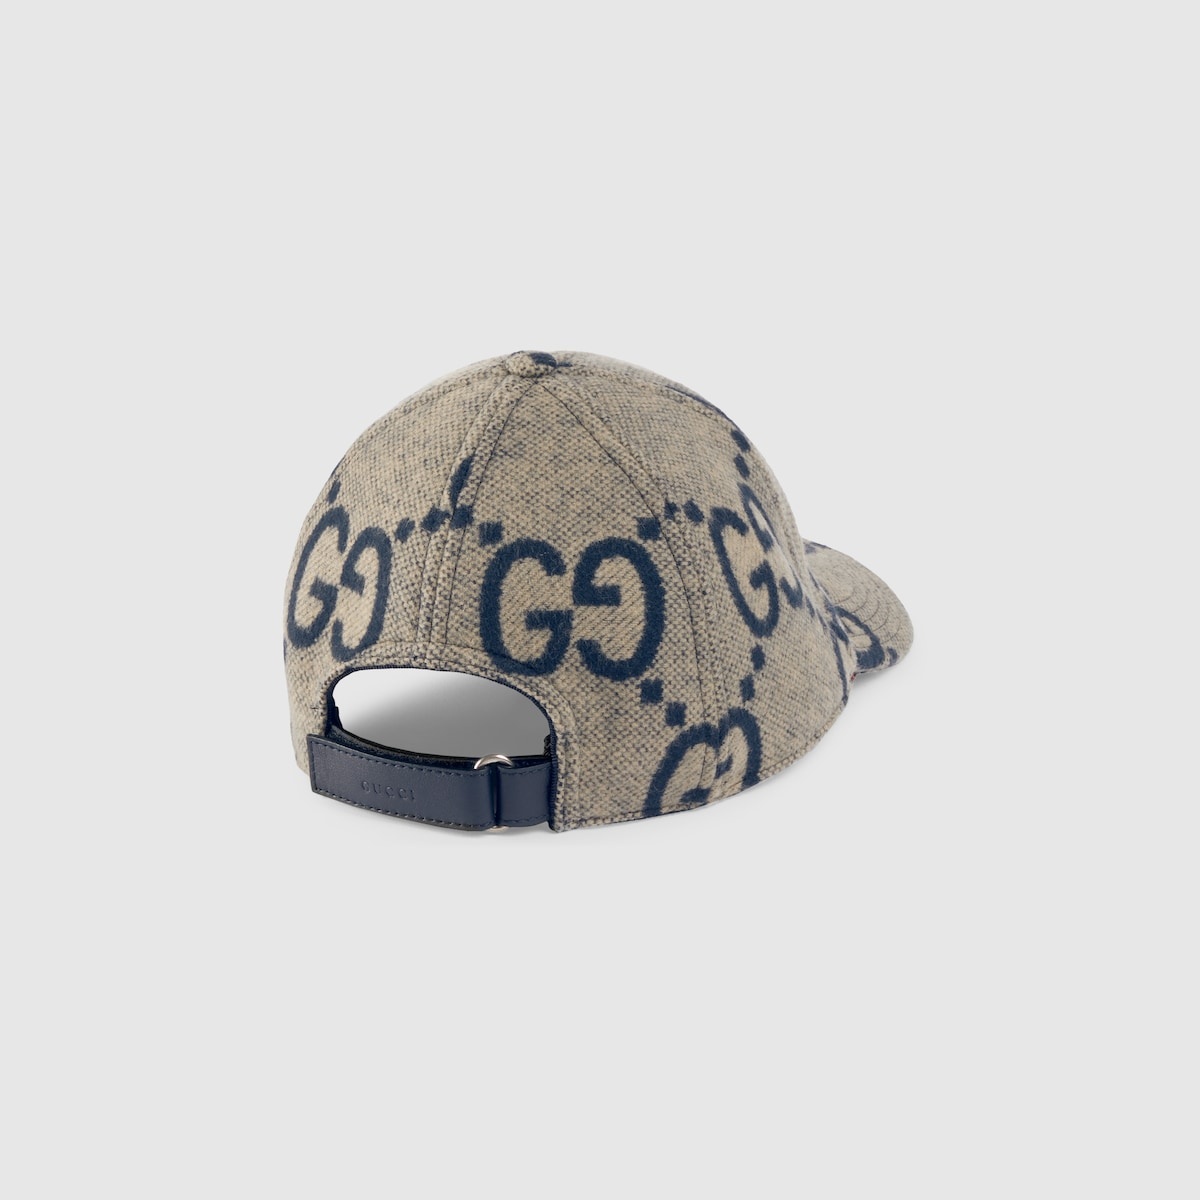 Jumbo GG wool baseball hat - 4